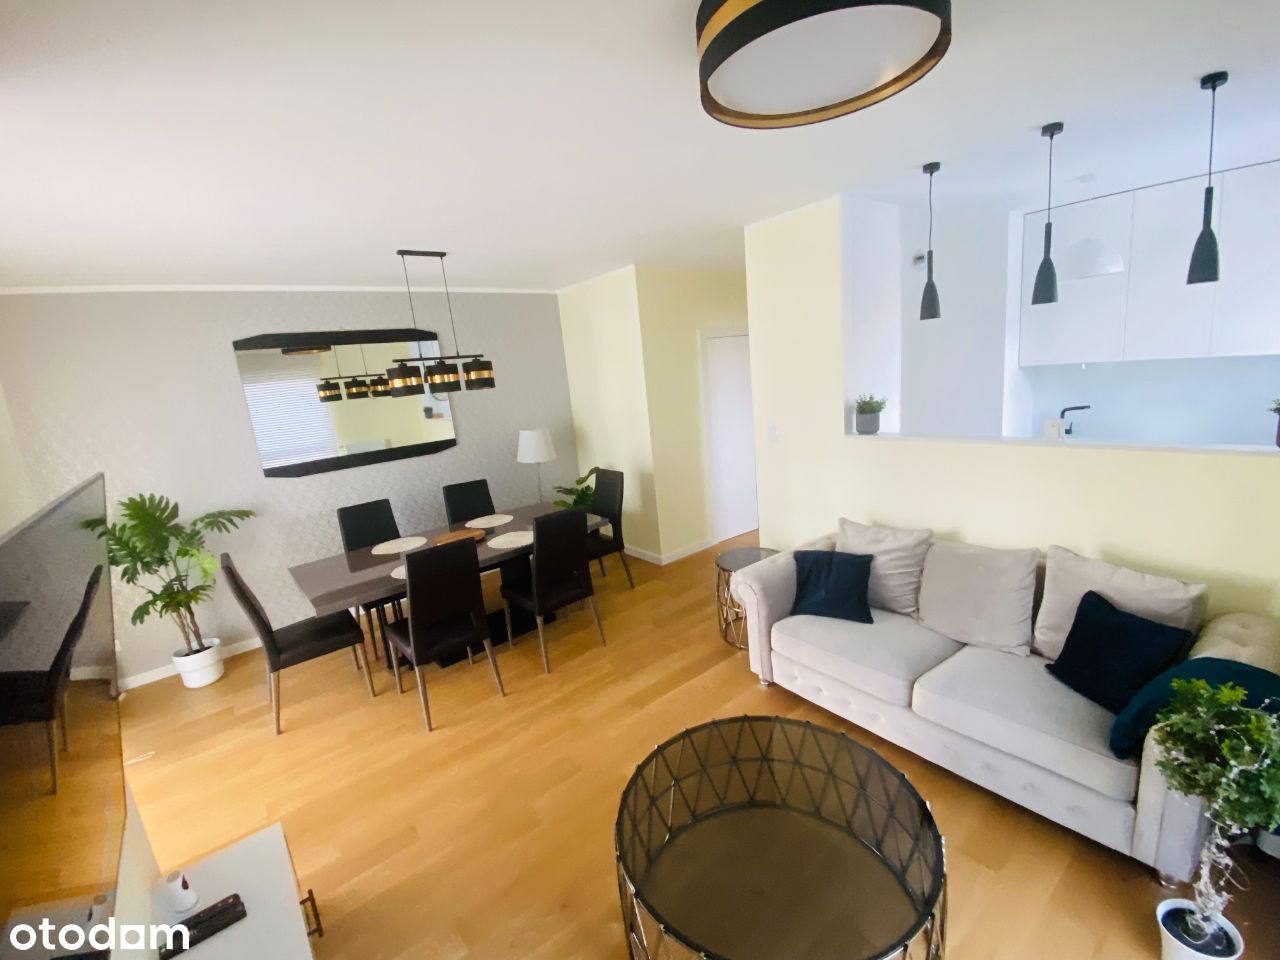 Apartament 4 pokojowy - 75 m2 - BEZPOŚREDNIO